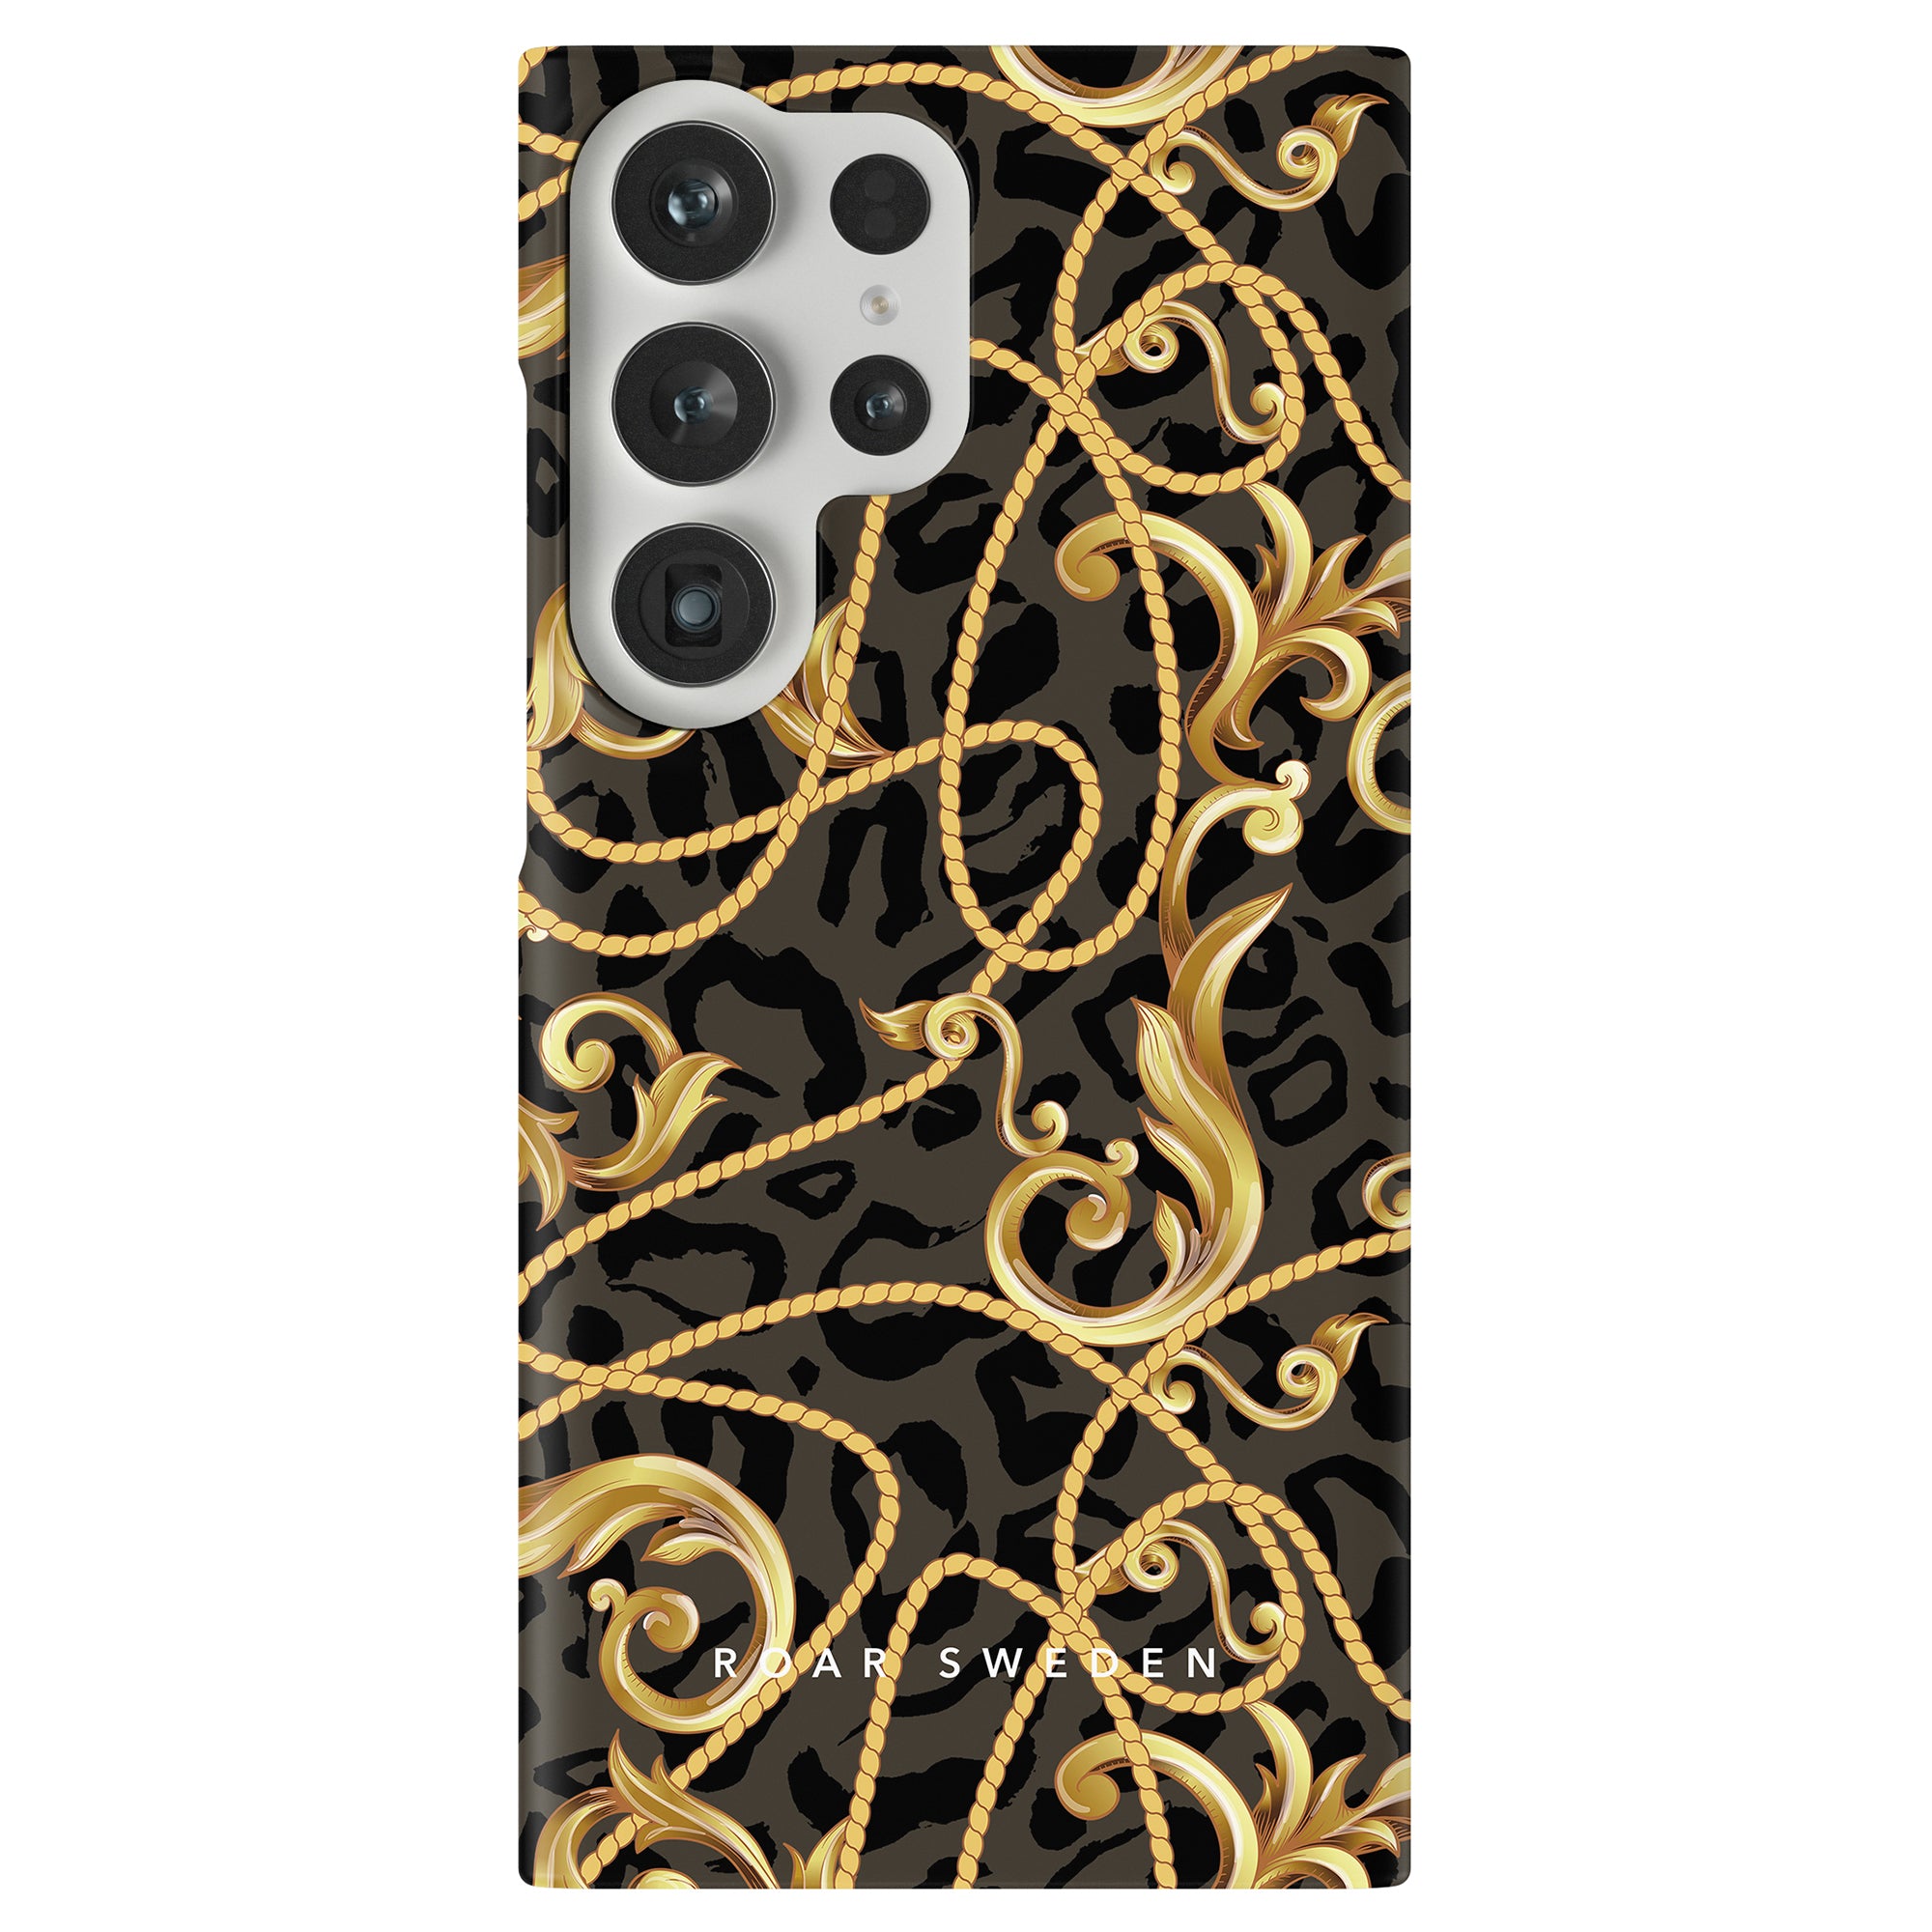 Ett Baroque - Slimt fodral med en utsmyckad design i svart och guld som ger robust skydd för din smartphone.